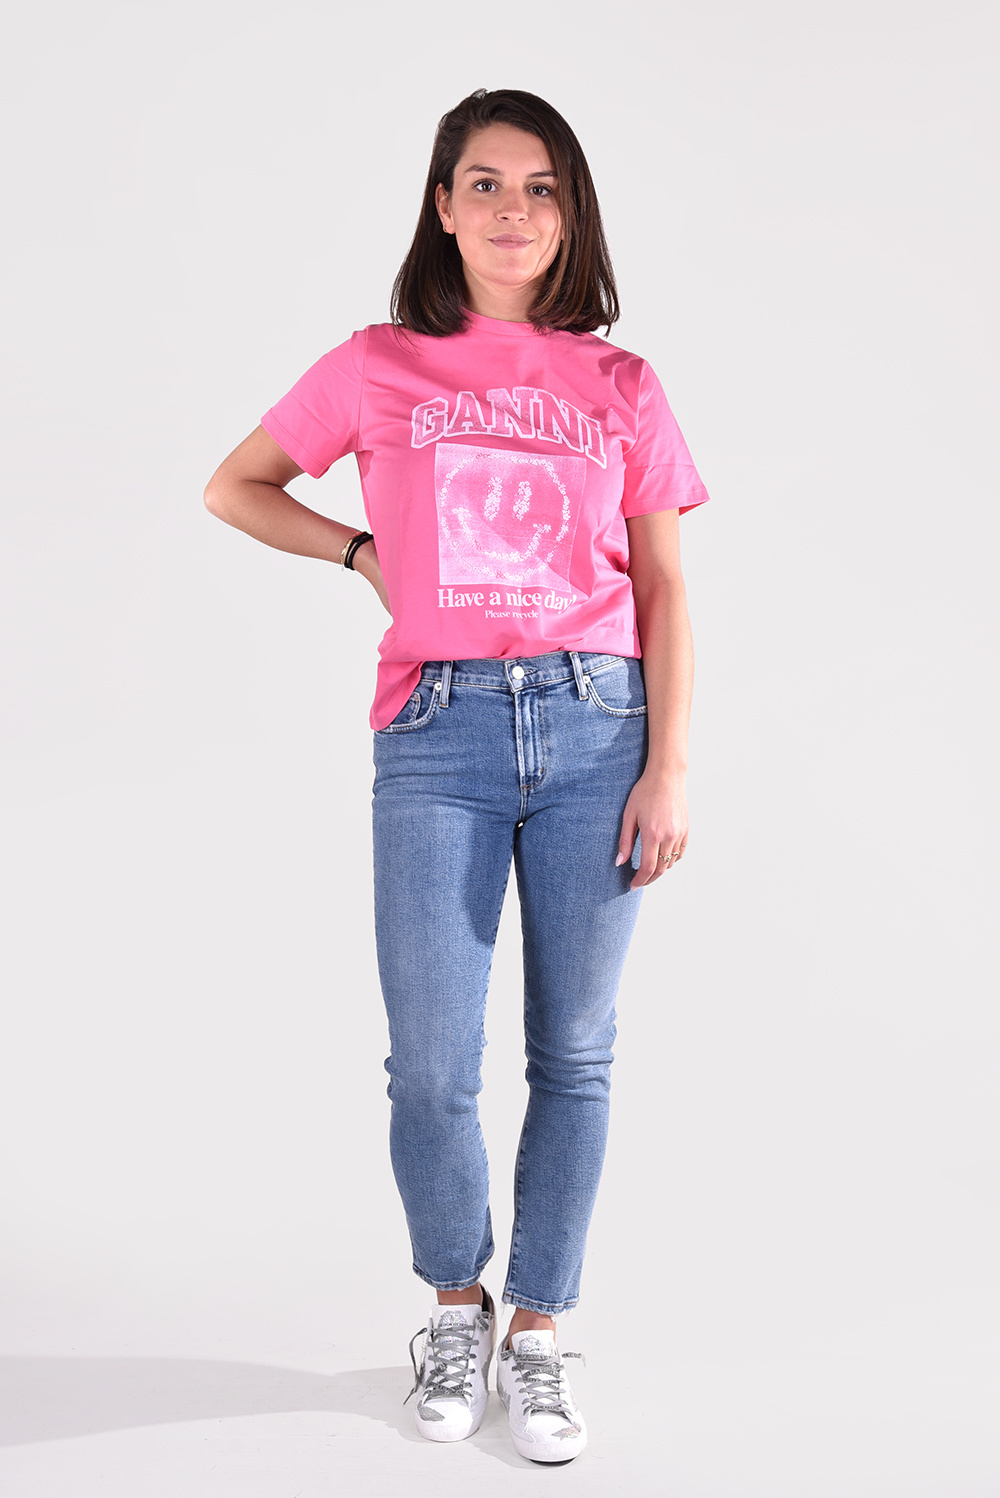 Afdeling teksten Eigen Ganni t-shirt T3072 roze - Marjon Snieders